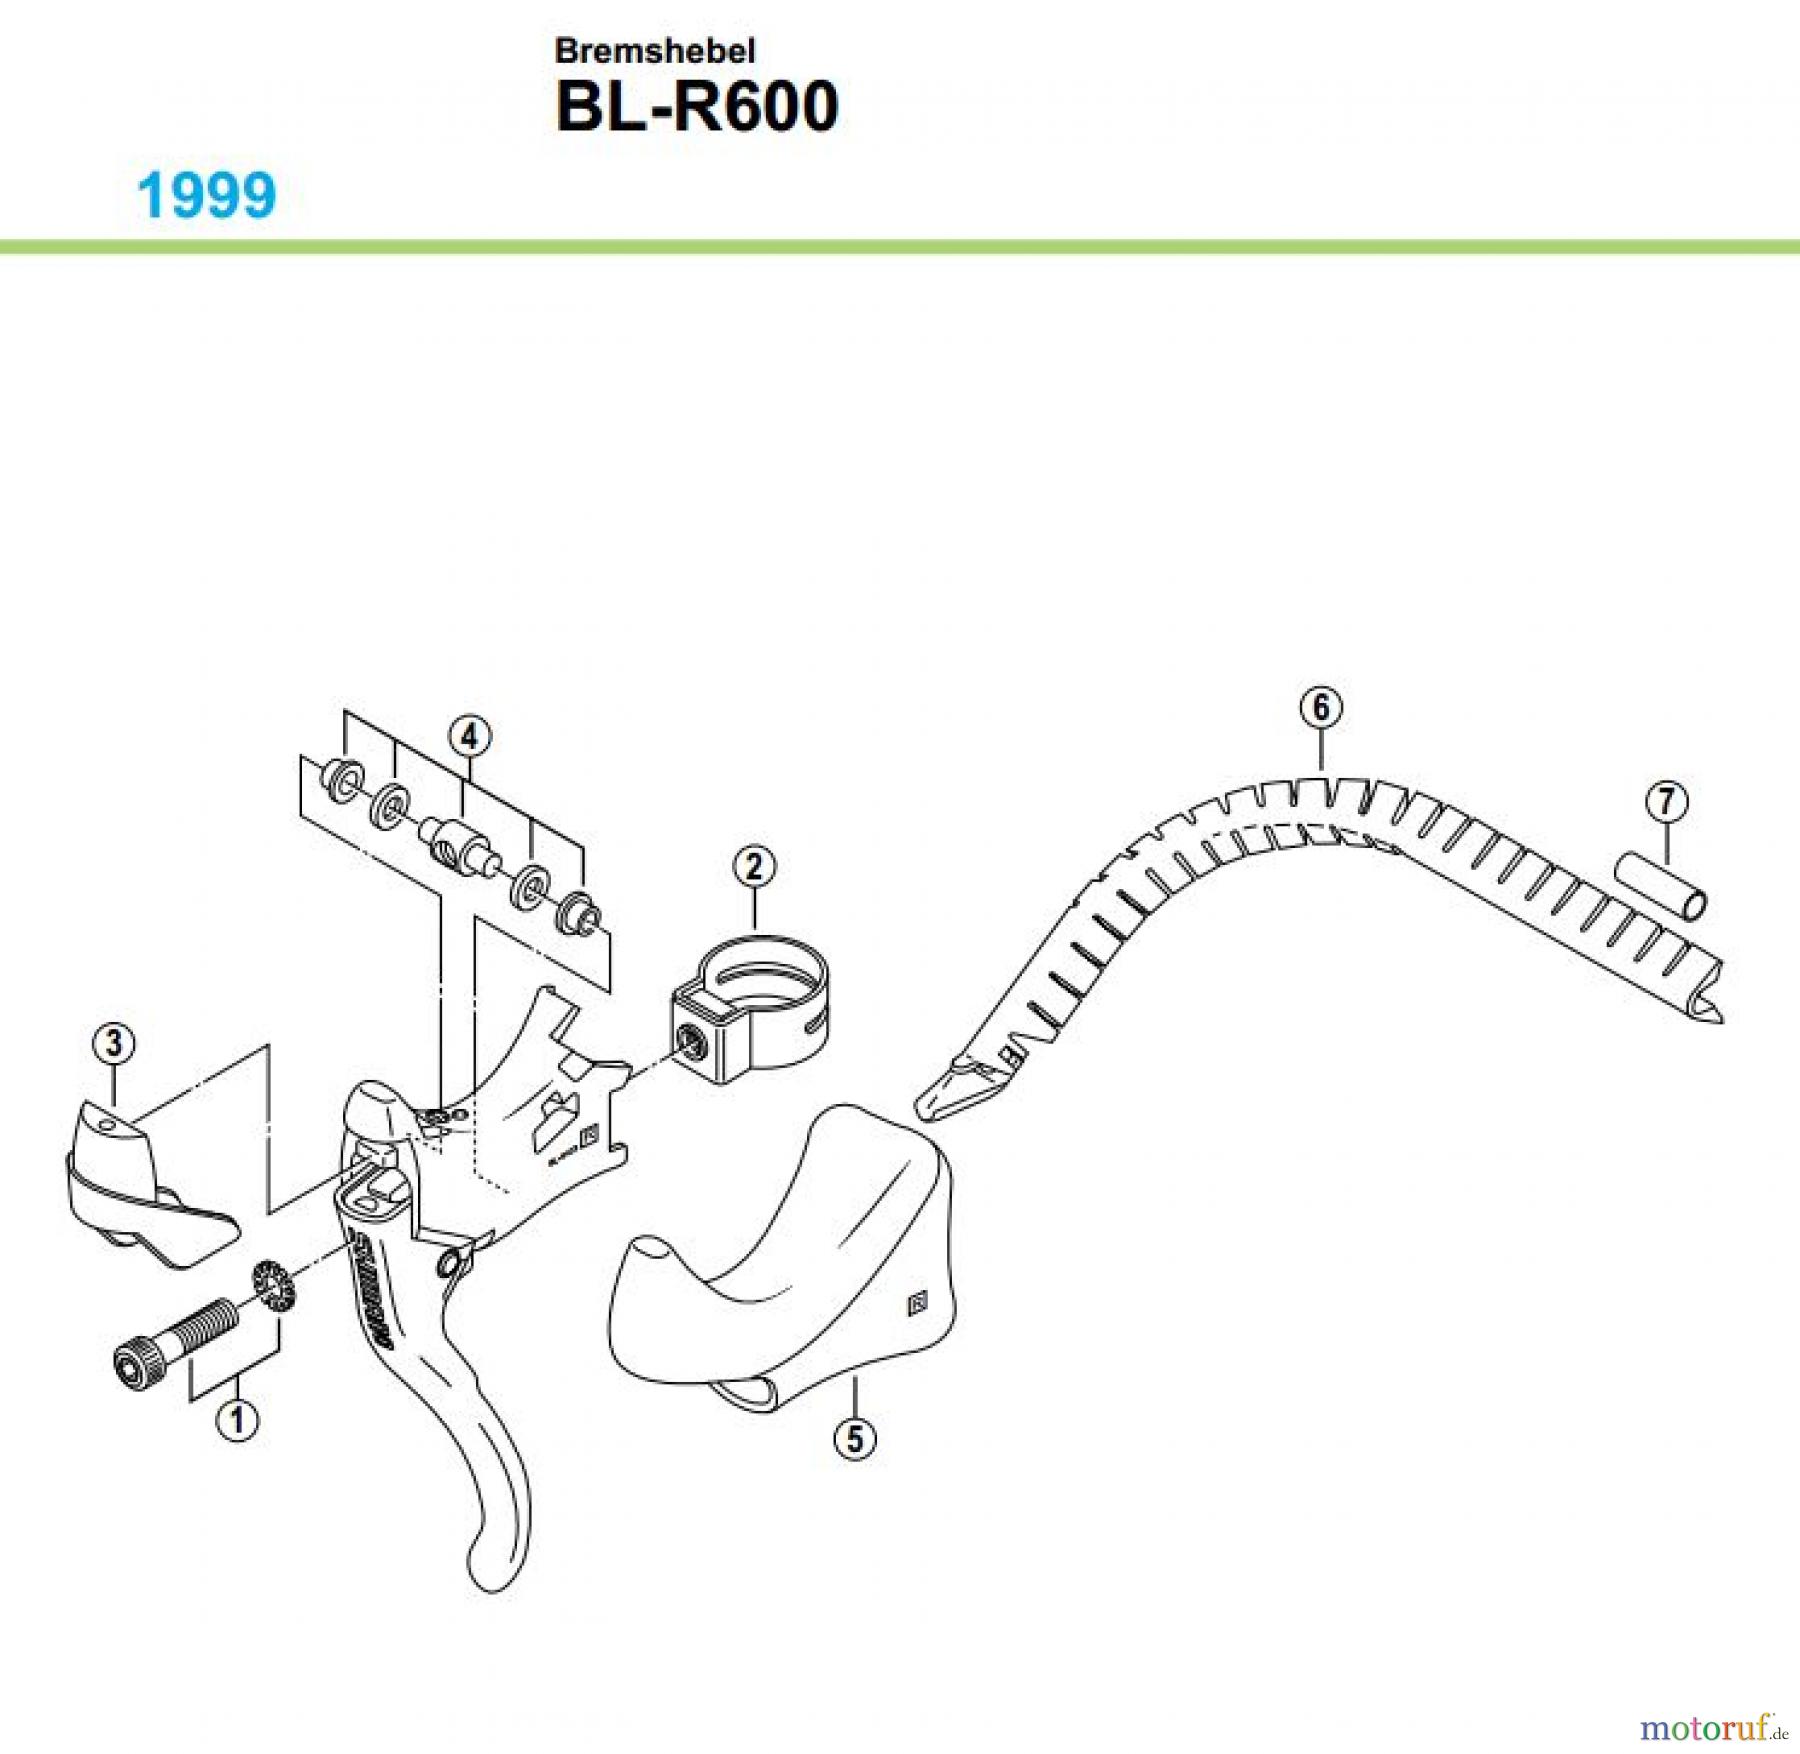  Shimano BL Brake Lever - Bremshebel BL-R600